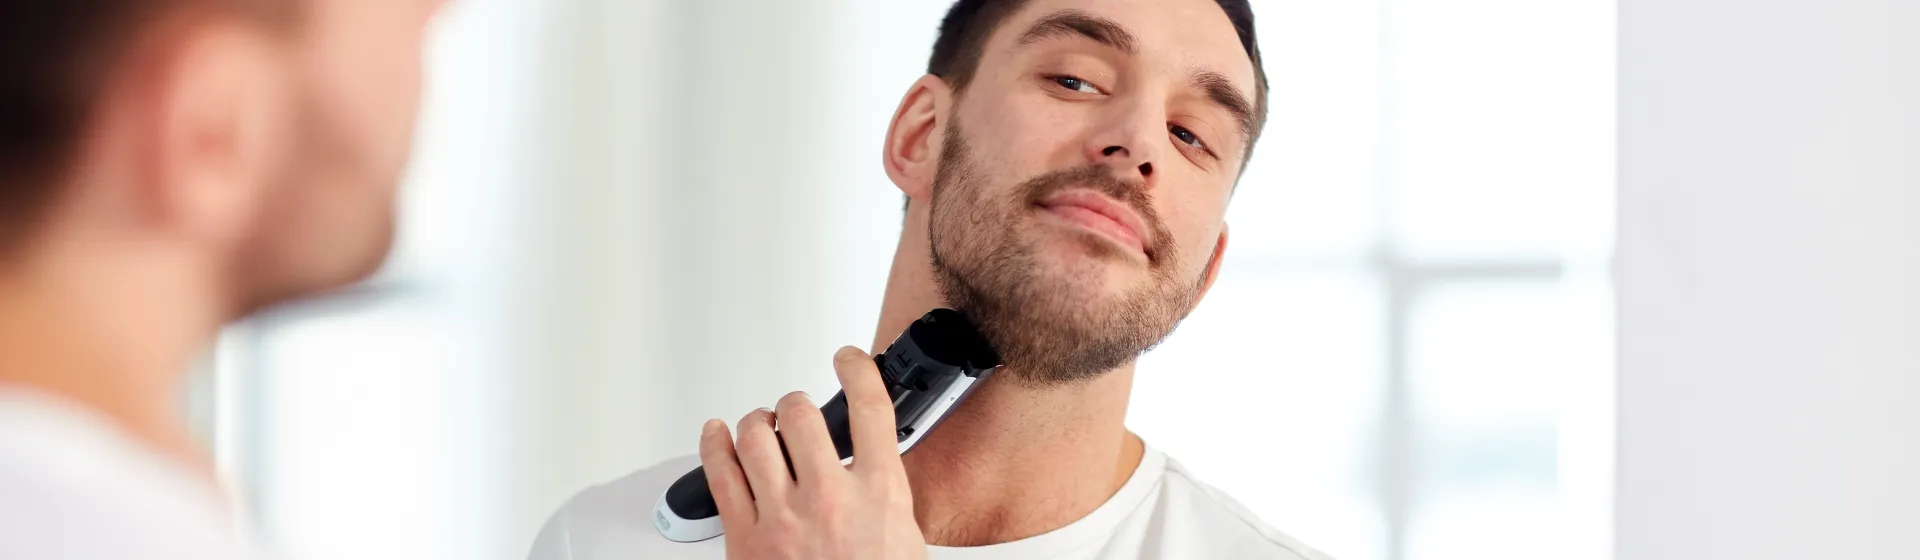 Como escolher o melhor barbeador elétrico para comprar?